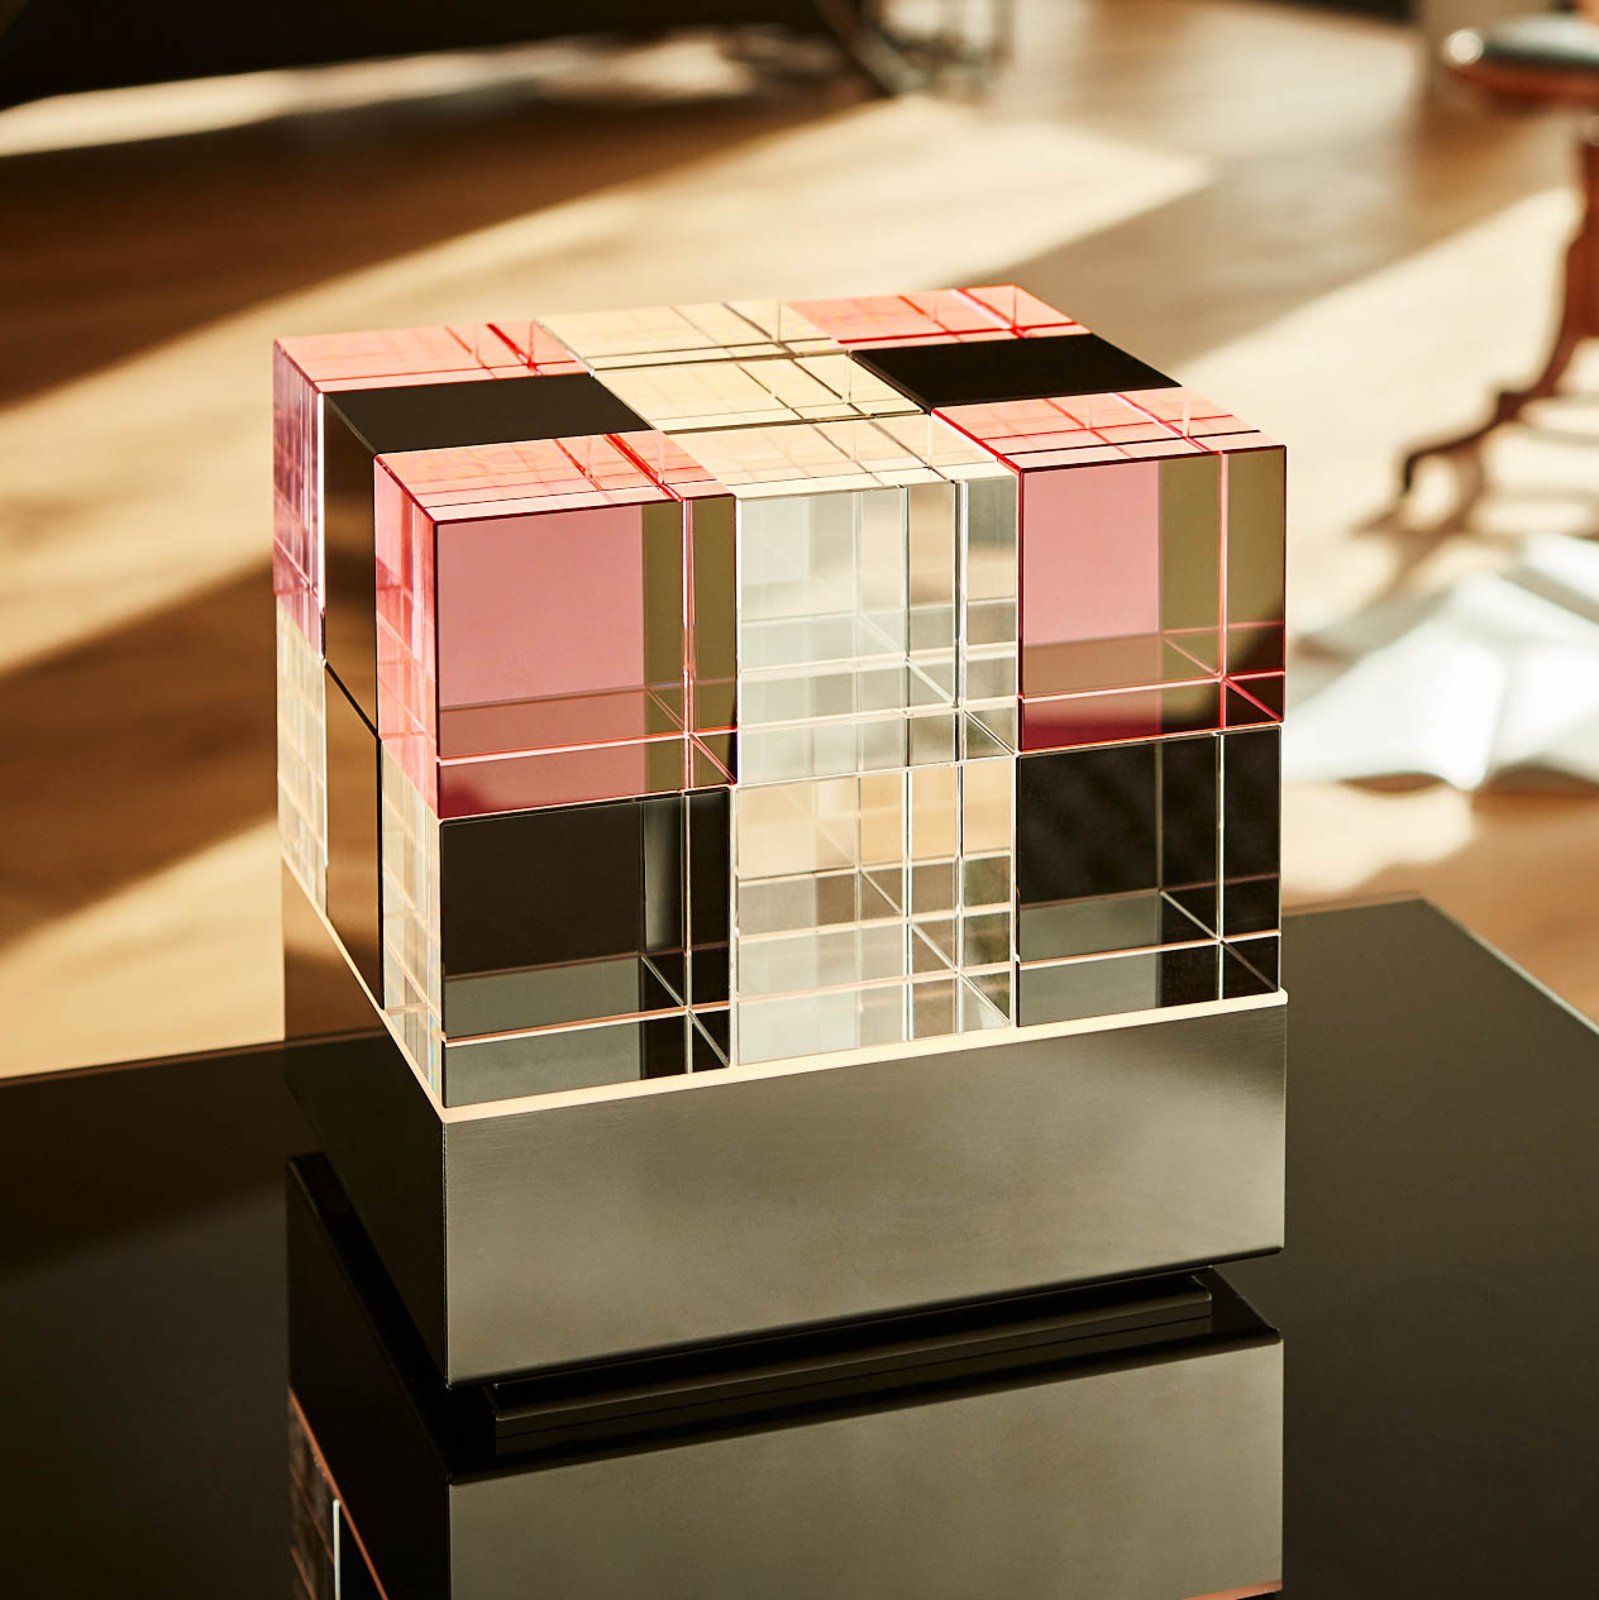 TECNOLUMEN Cubelight LED-es asztali lámpa, rózsaszín/fekete színben